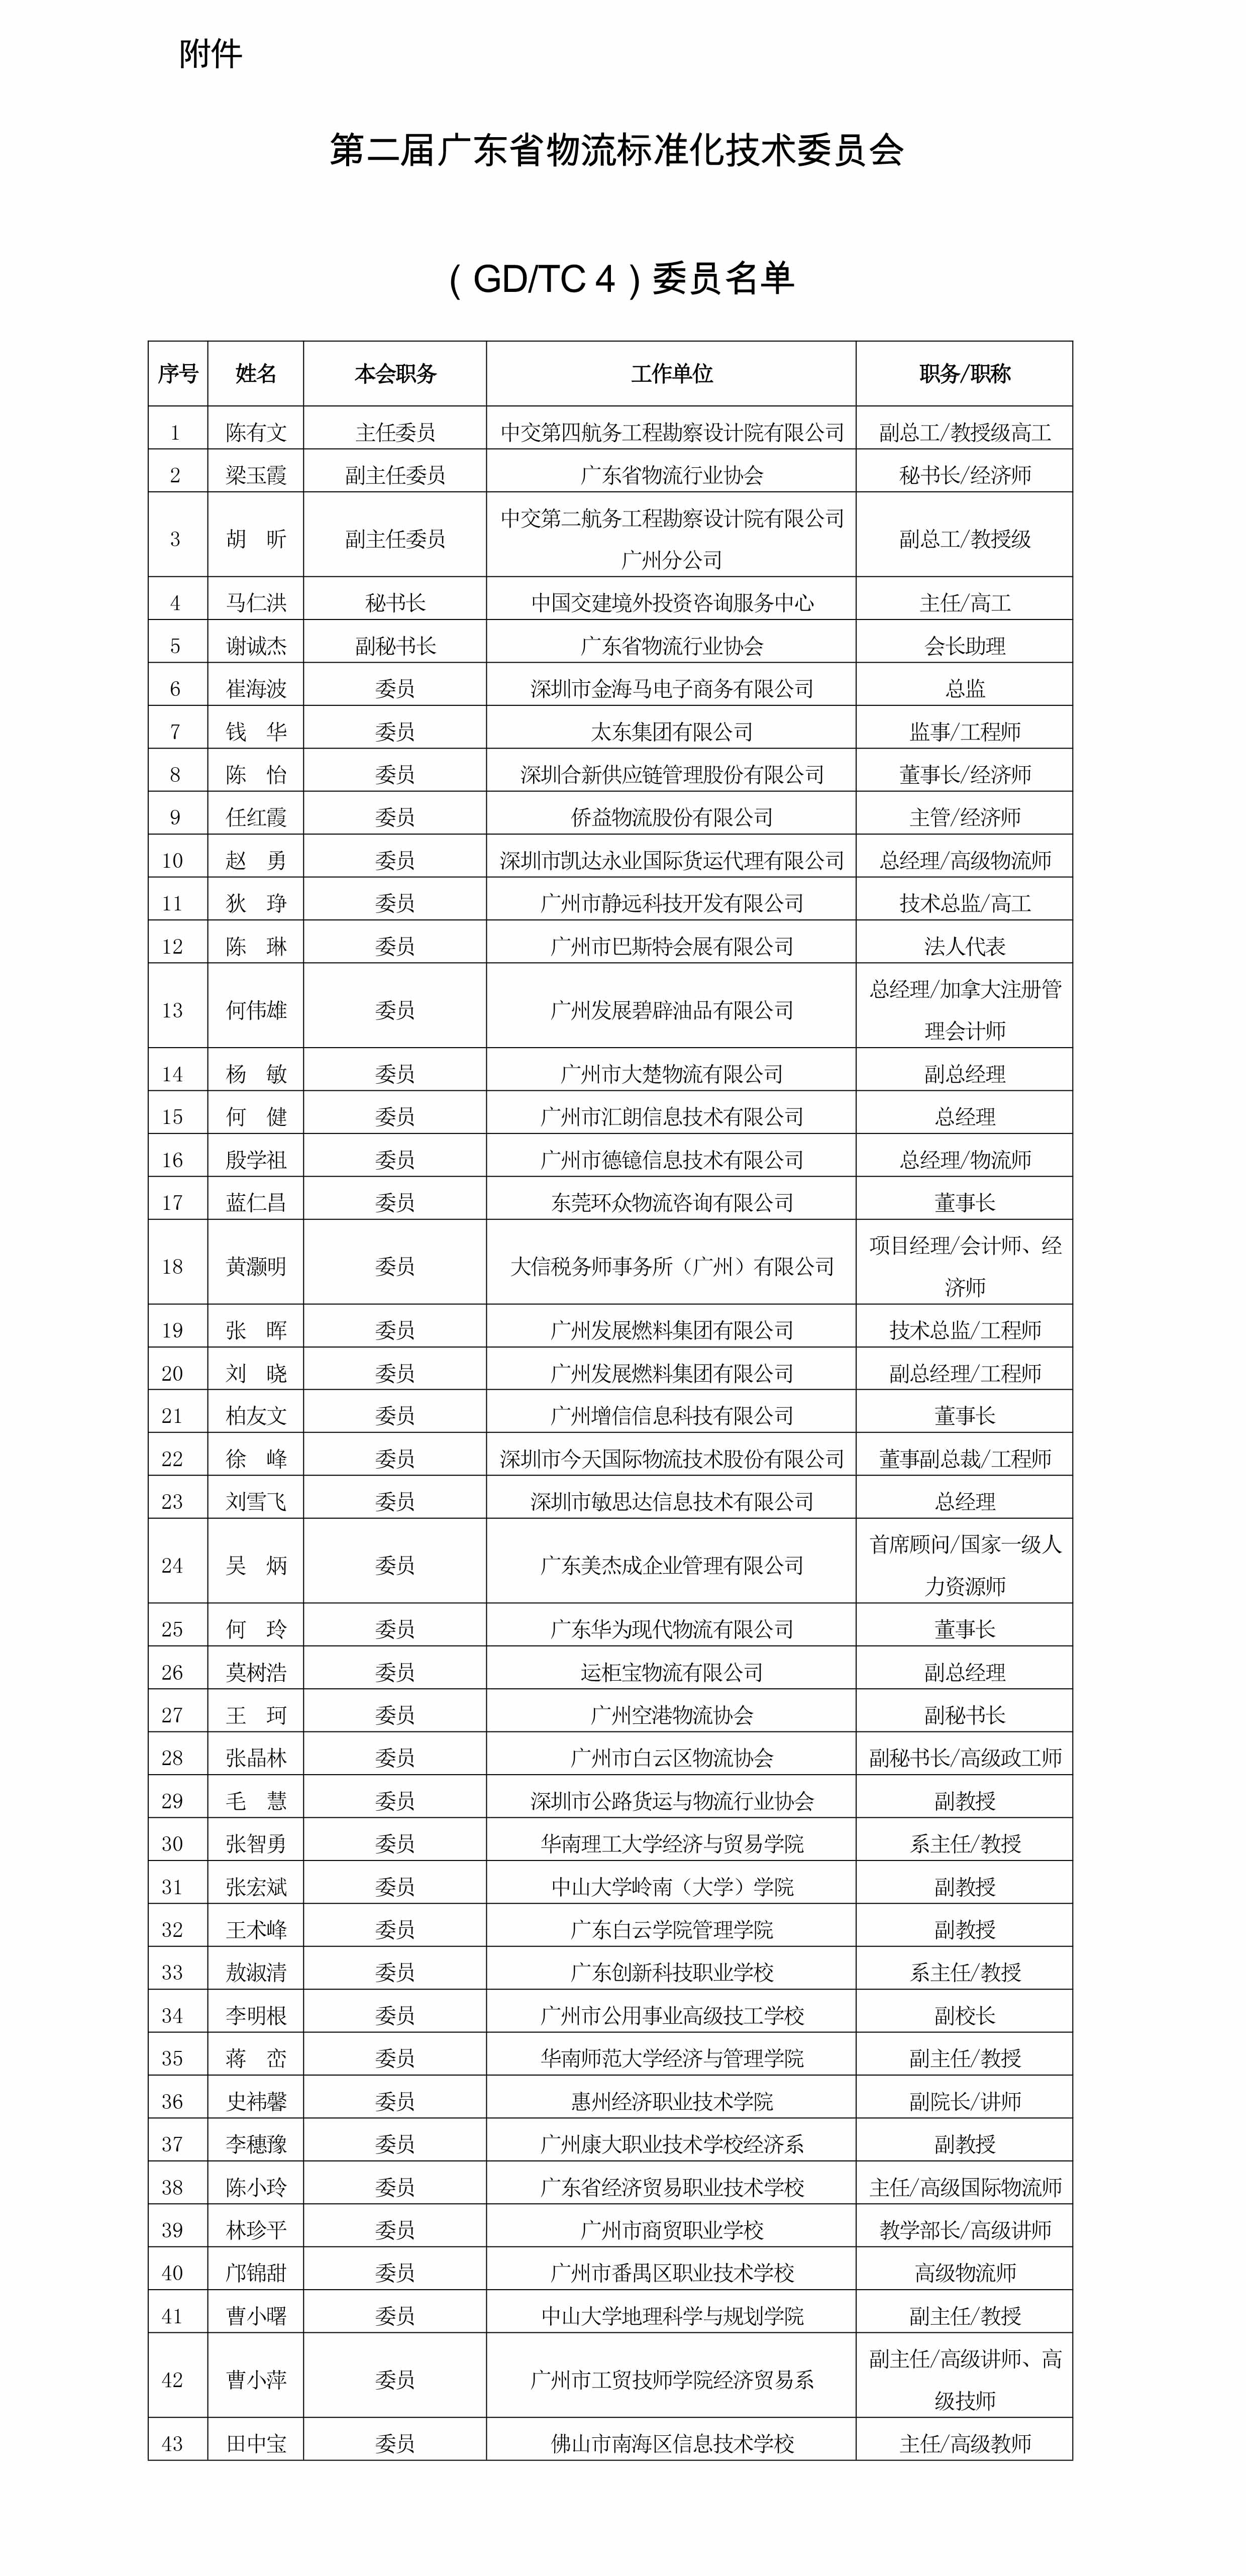 第二届广东省物流标准化技术委员会委员名单.jpg